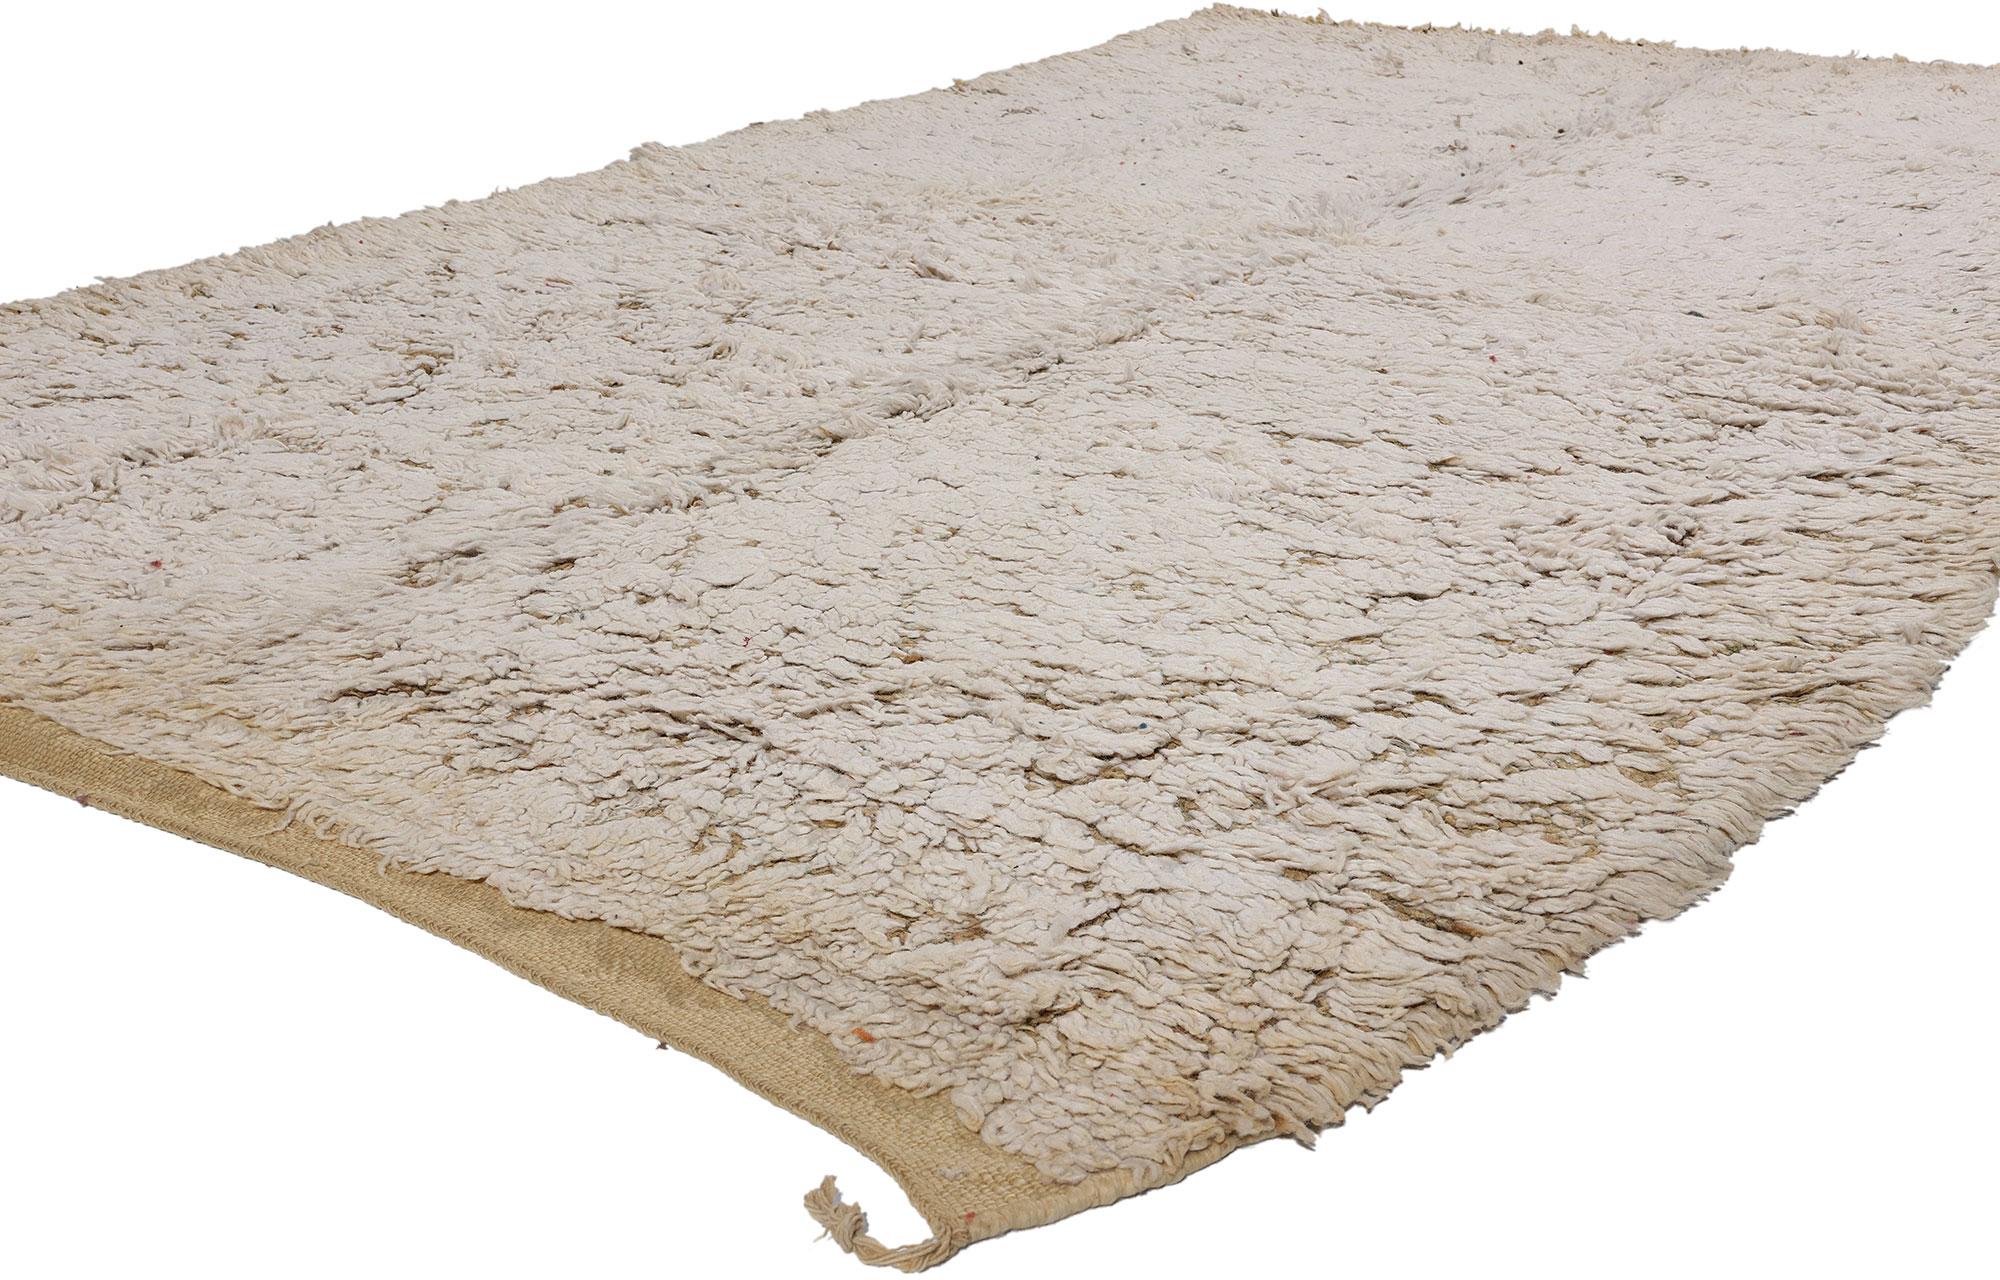 21800 Vintage Neutral Beni MGuild Marokkanischer Teppich, 05'05 x 09'08. Die marokkanischen Beni MGuild Teppiche sind eine Art traditioneller marokkanischer Teppiche, die vom Stamm der Beni MGuild stammen, der im Mittleren Atlasgebirge in Marokko